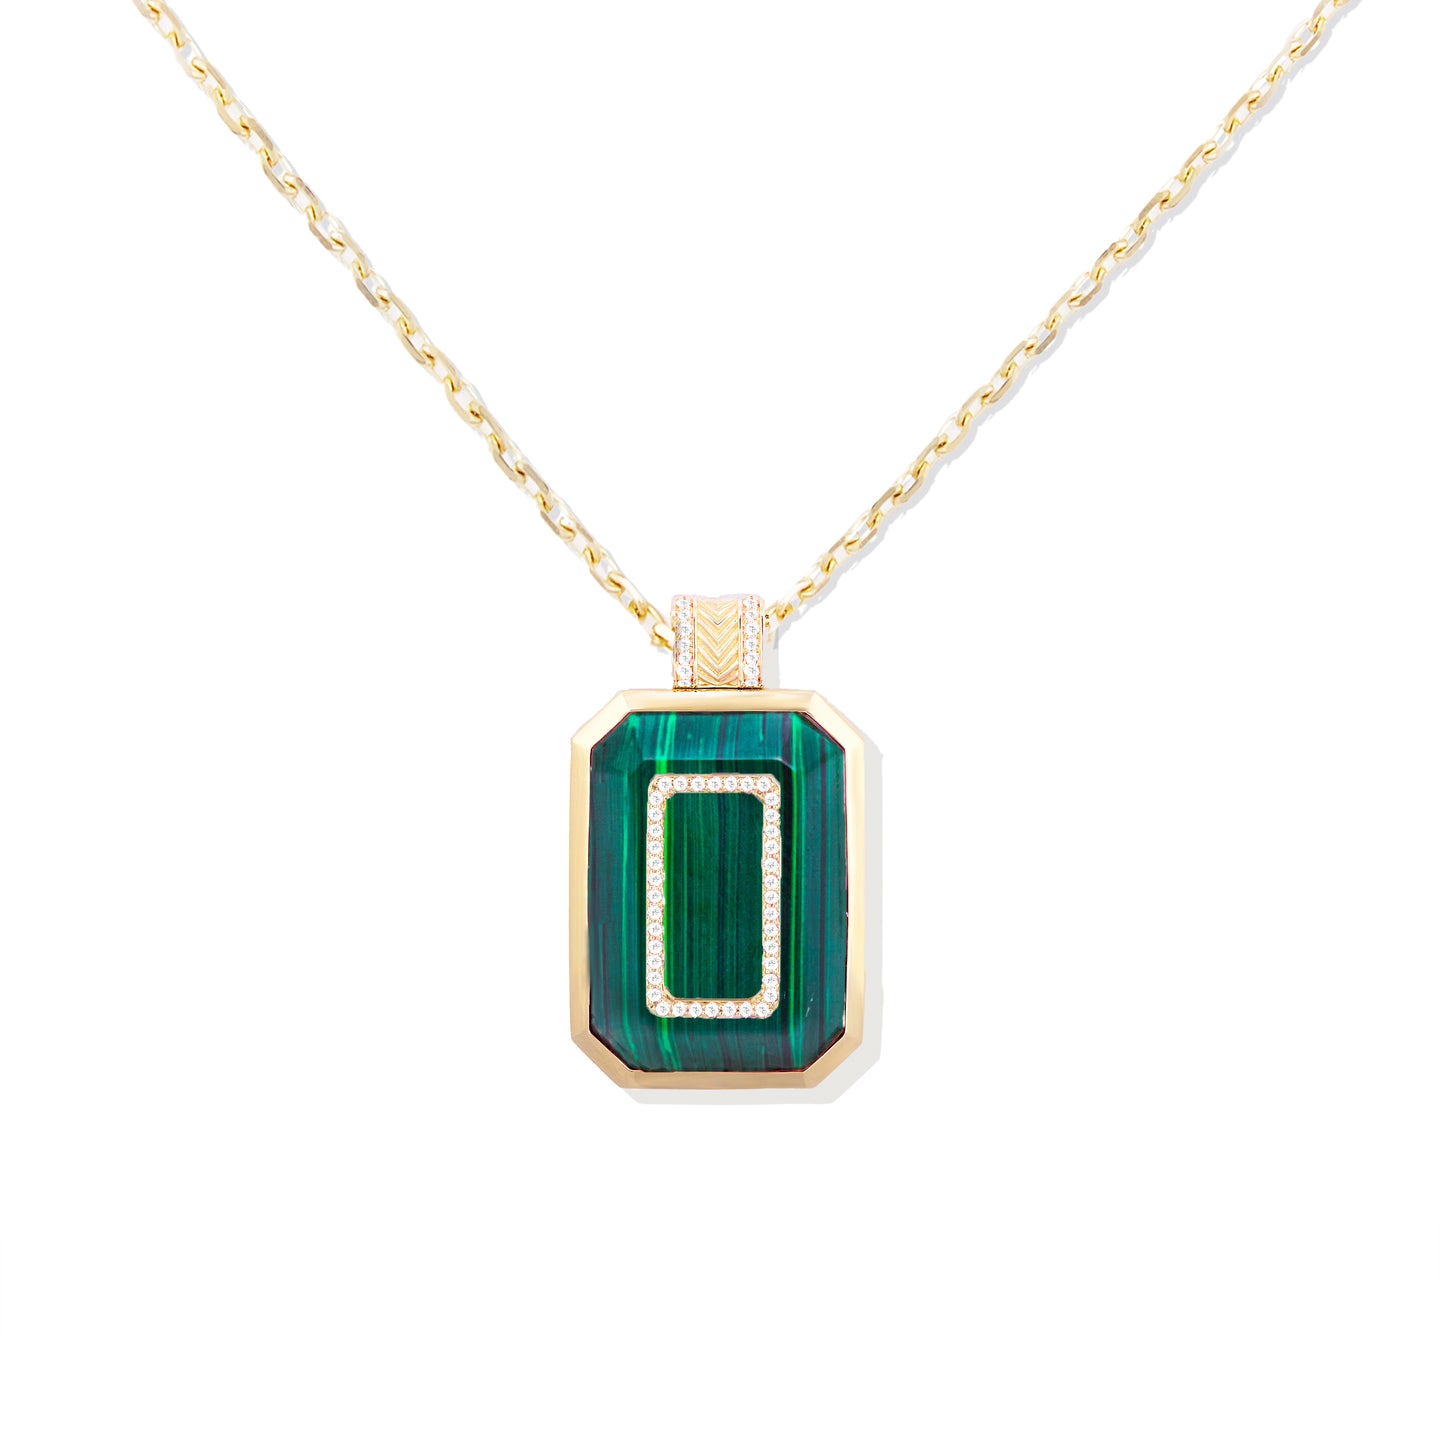 Spark Emerald Cut Pendant Necklace - Malachite & Diamond